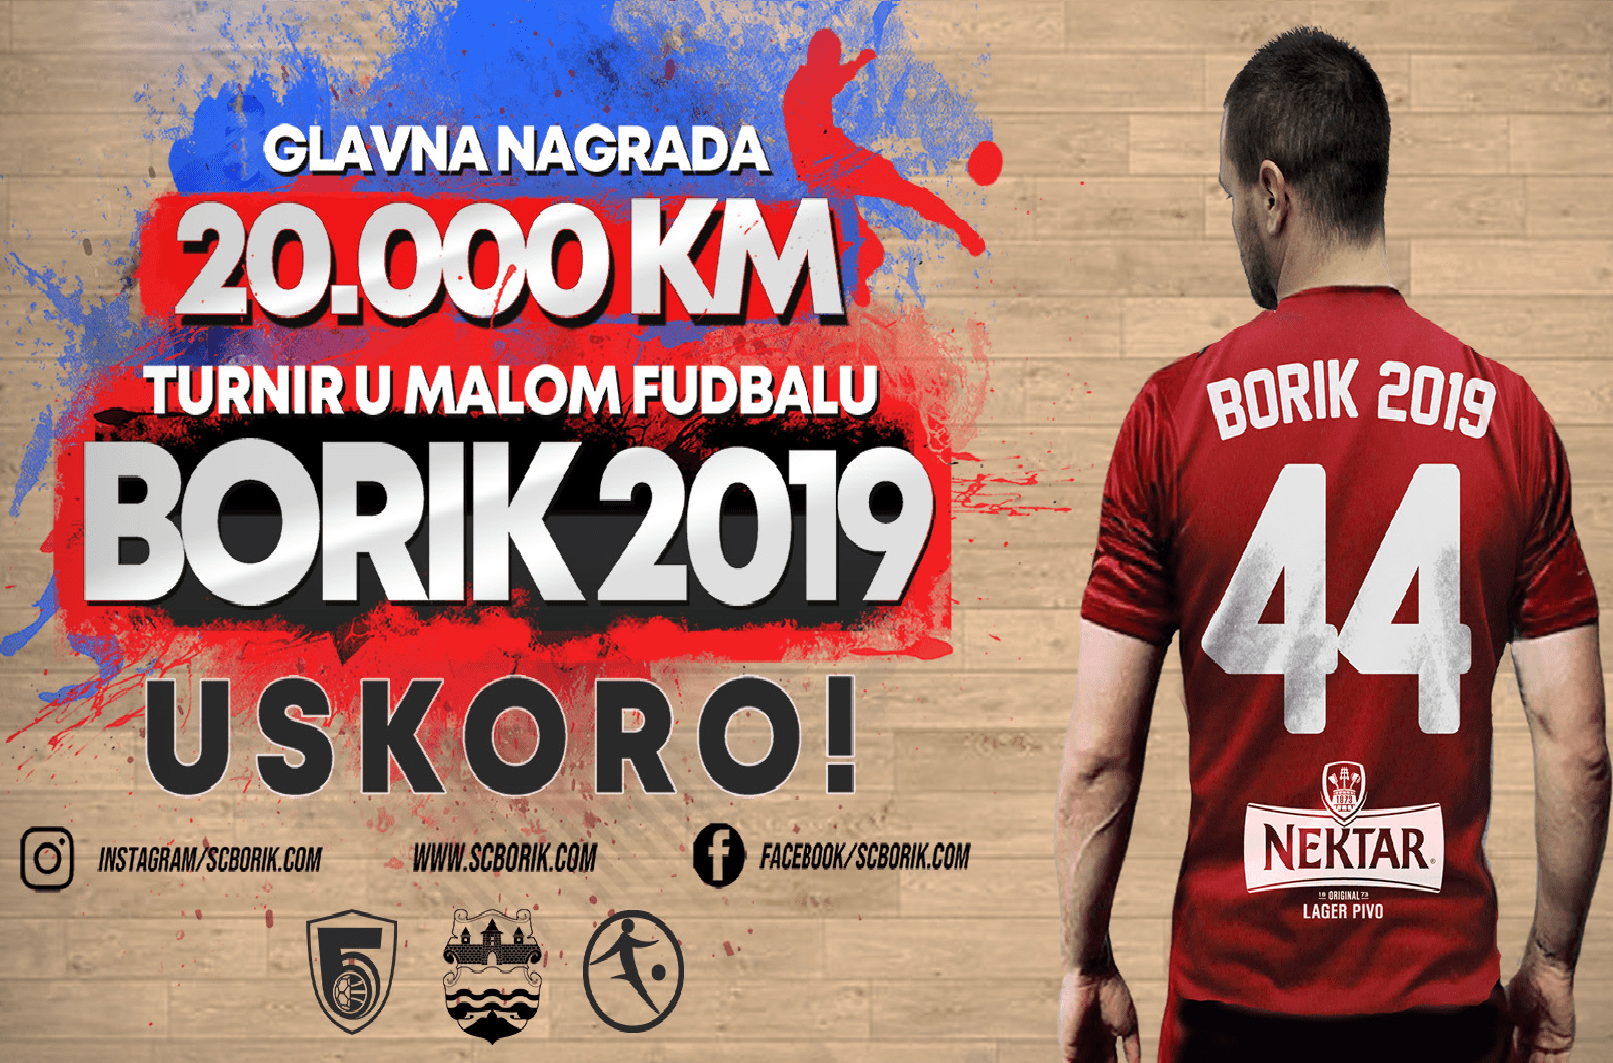 Fudbalska ekipa Fakulteta od 18.15 časova igra prvu utakmicu na turniru “Borik 2019”